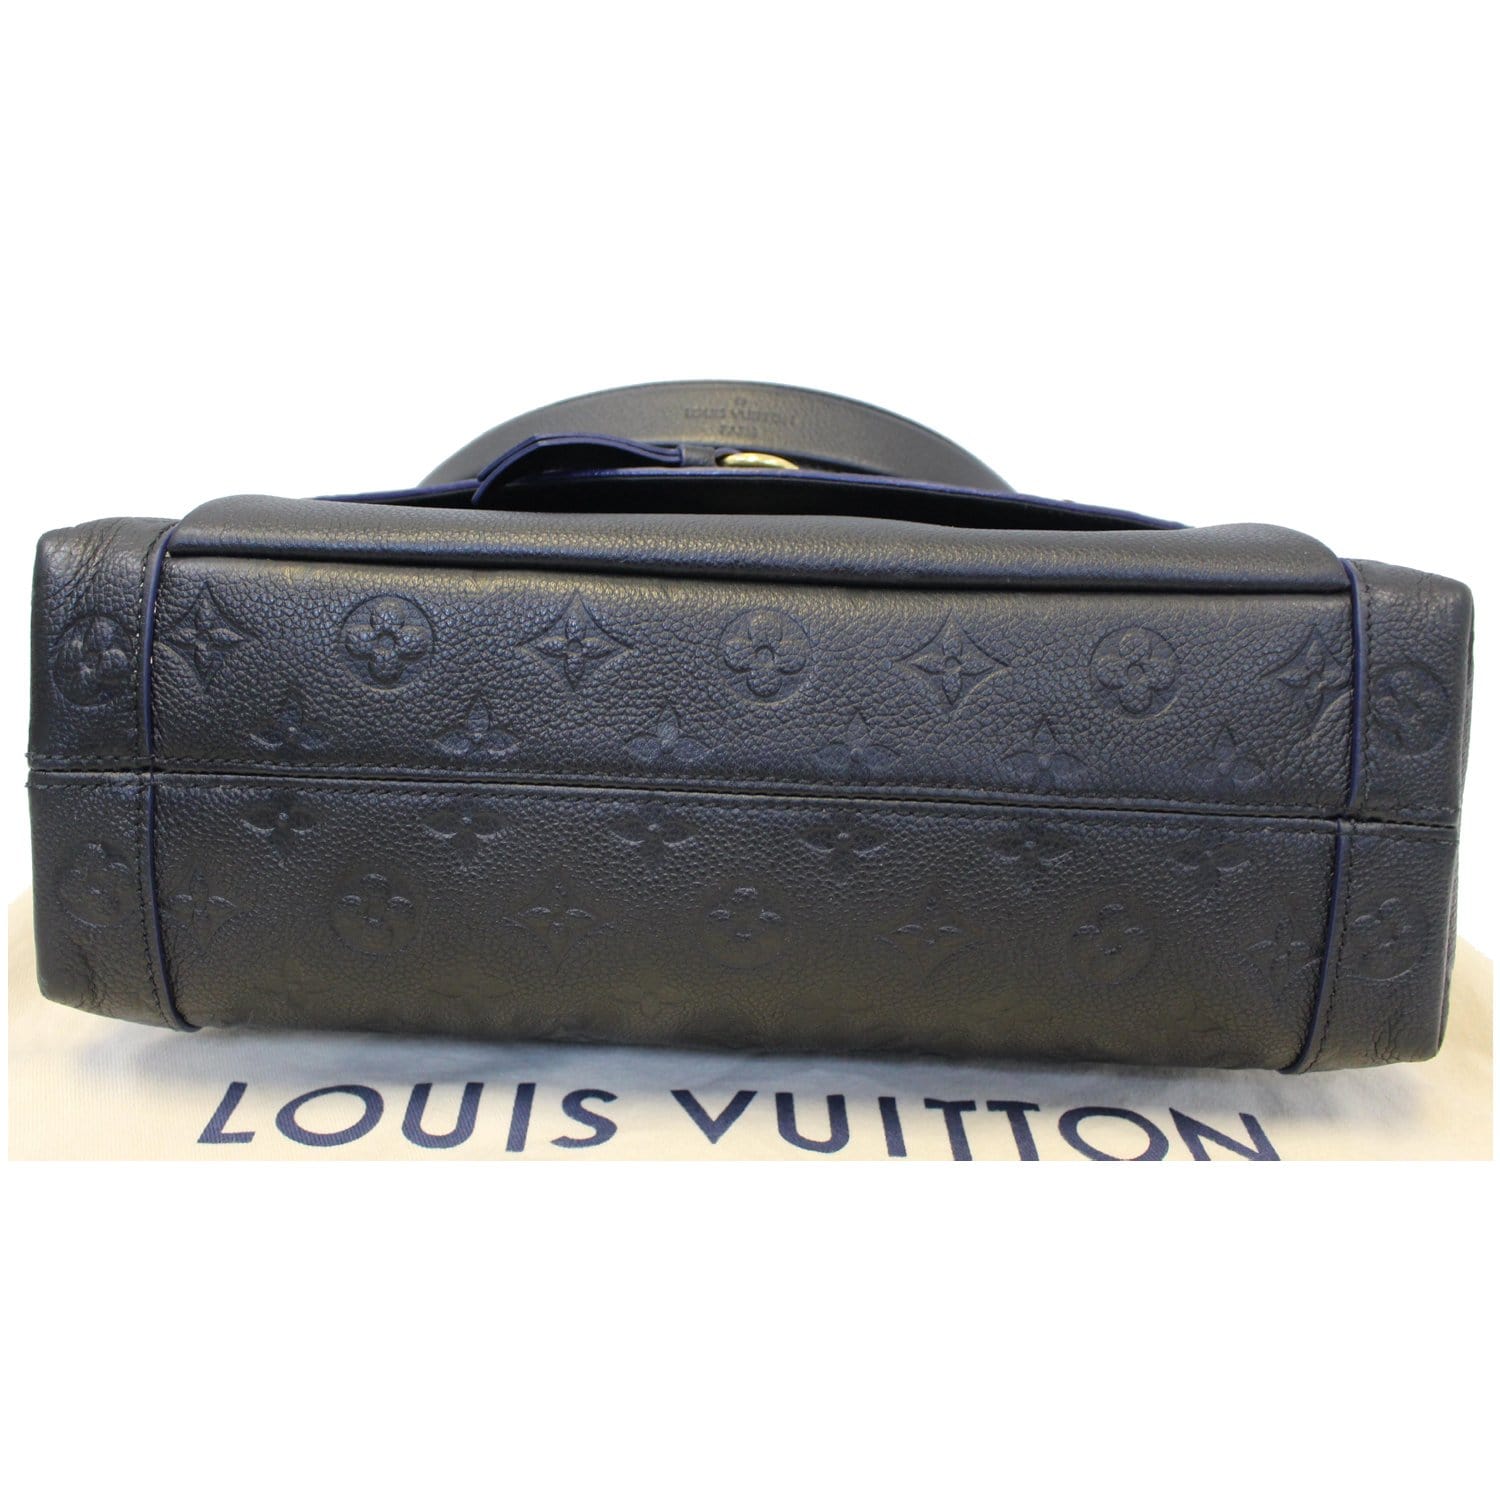 Louis Vuitton Blanche MM - Luxe Du Jour